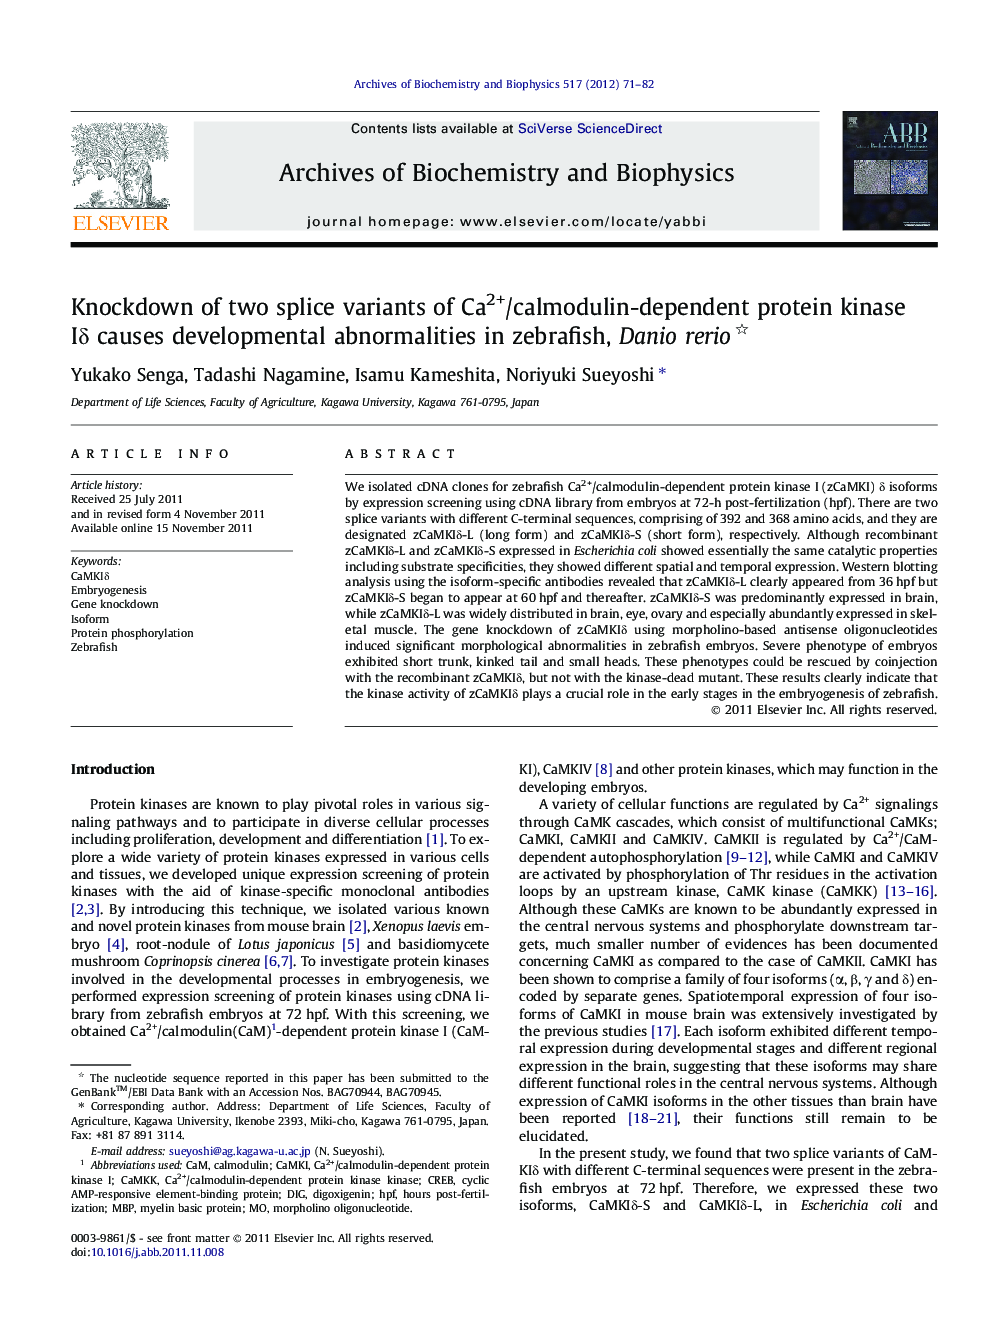 Knockdown of two splice variants of Ca2+/calmodulin-dependent protein kinase IÎ´ causes developmental abnormalities in zebrafish, Danio rerio